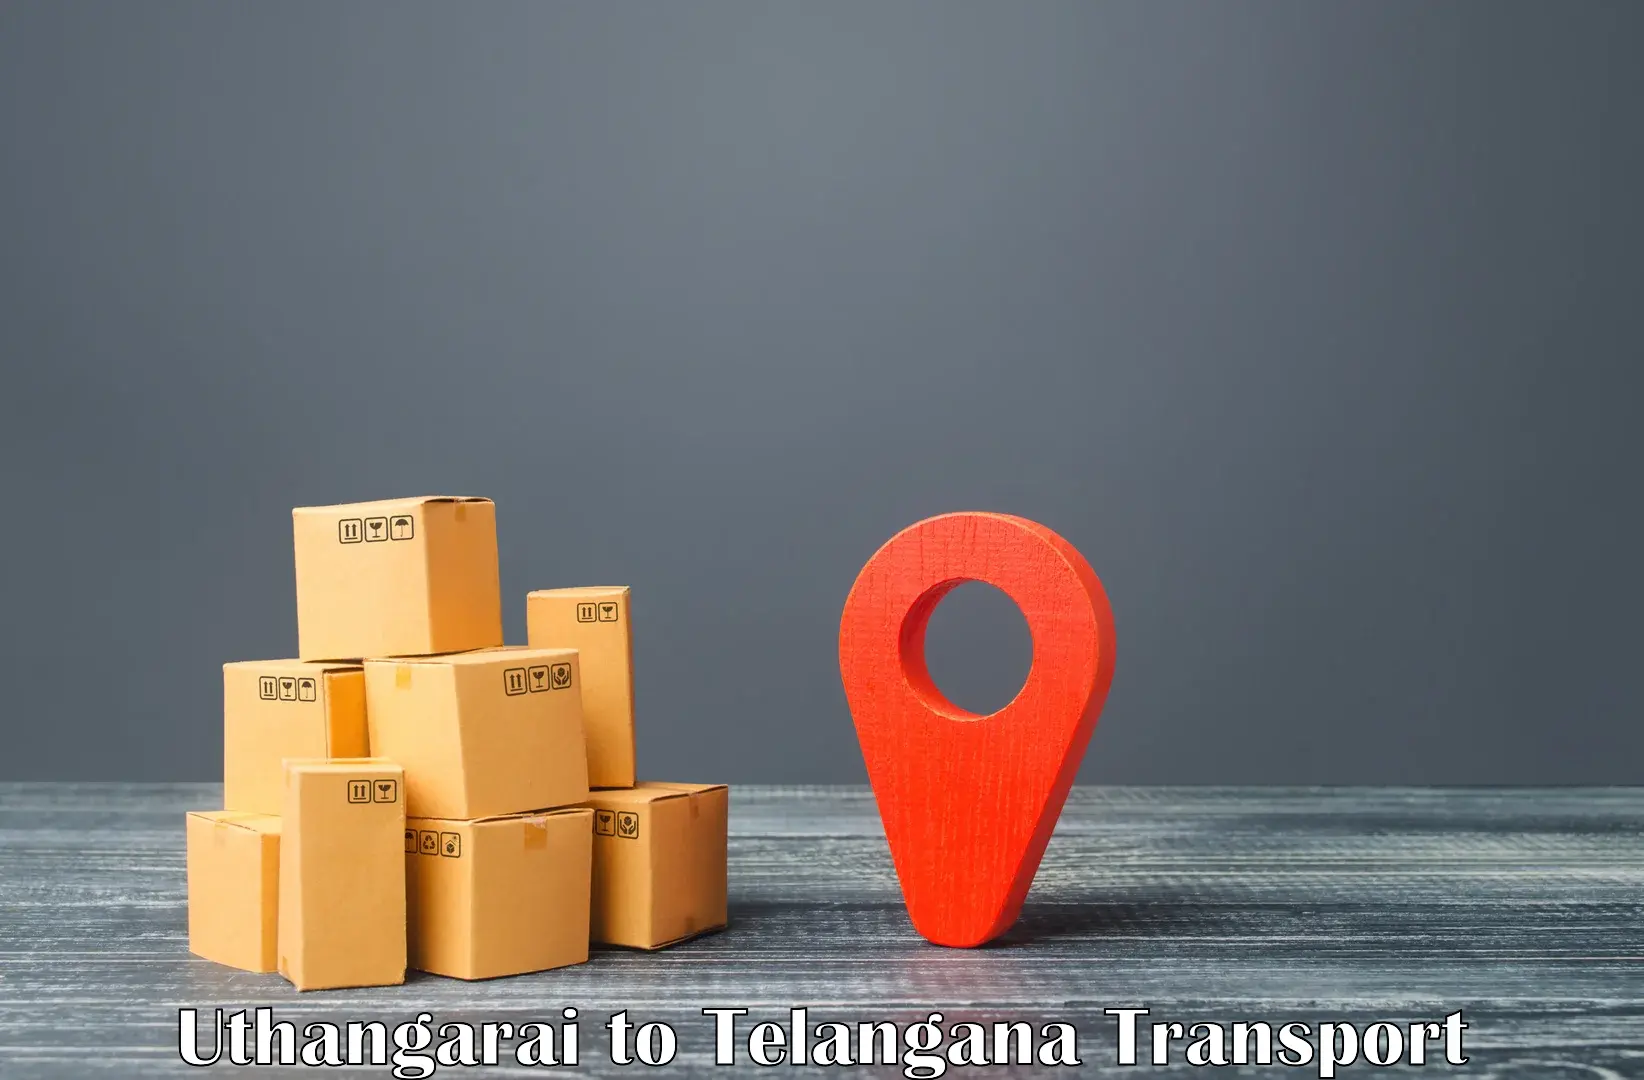 Online transport booking Uthangarai to Telangana